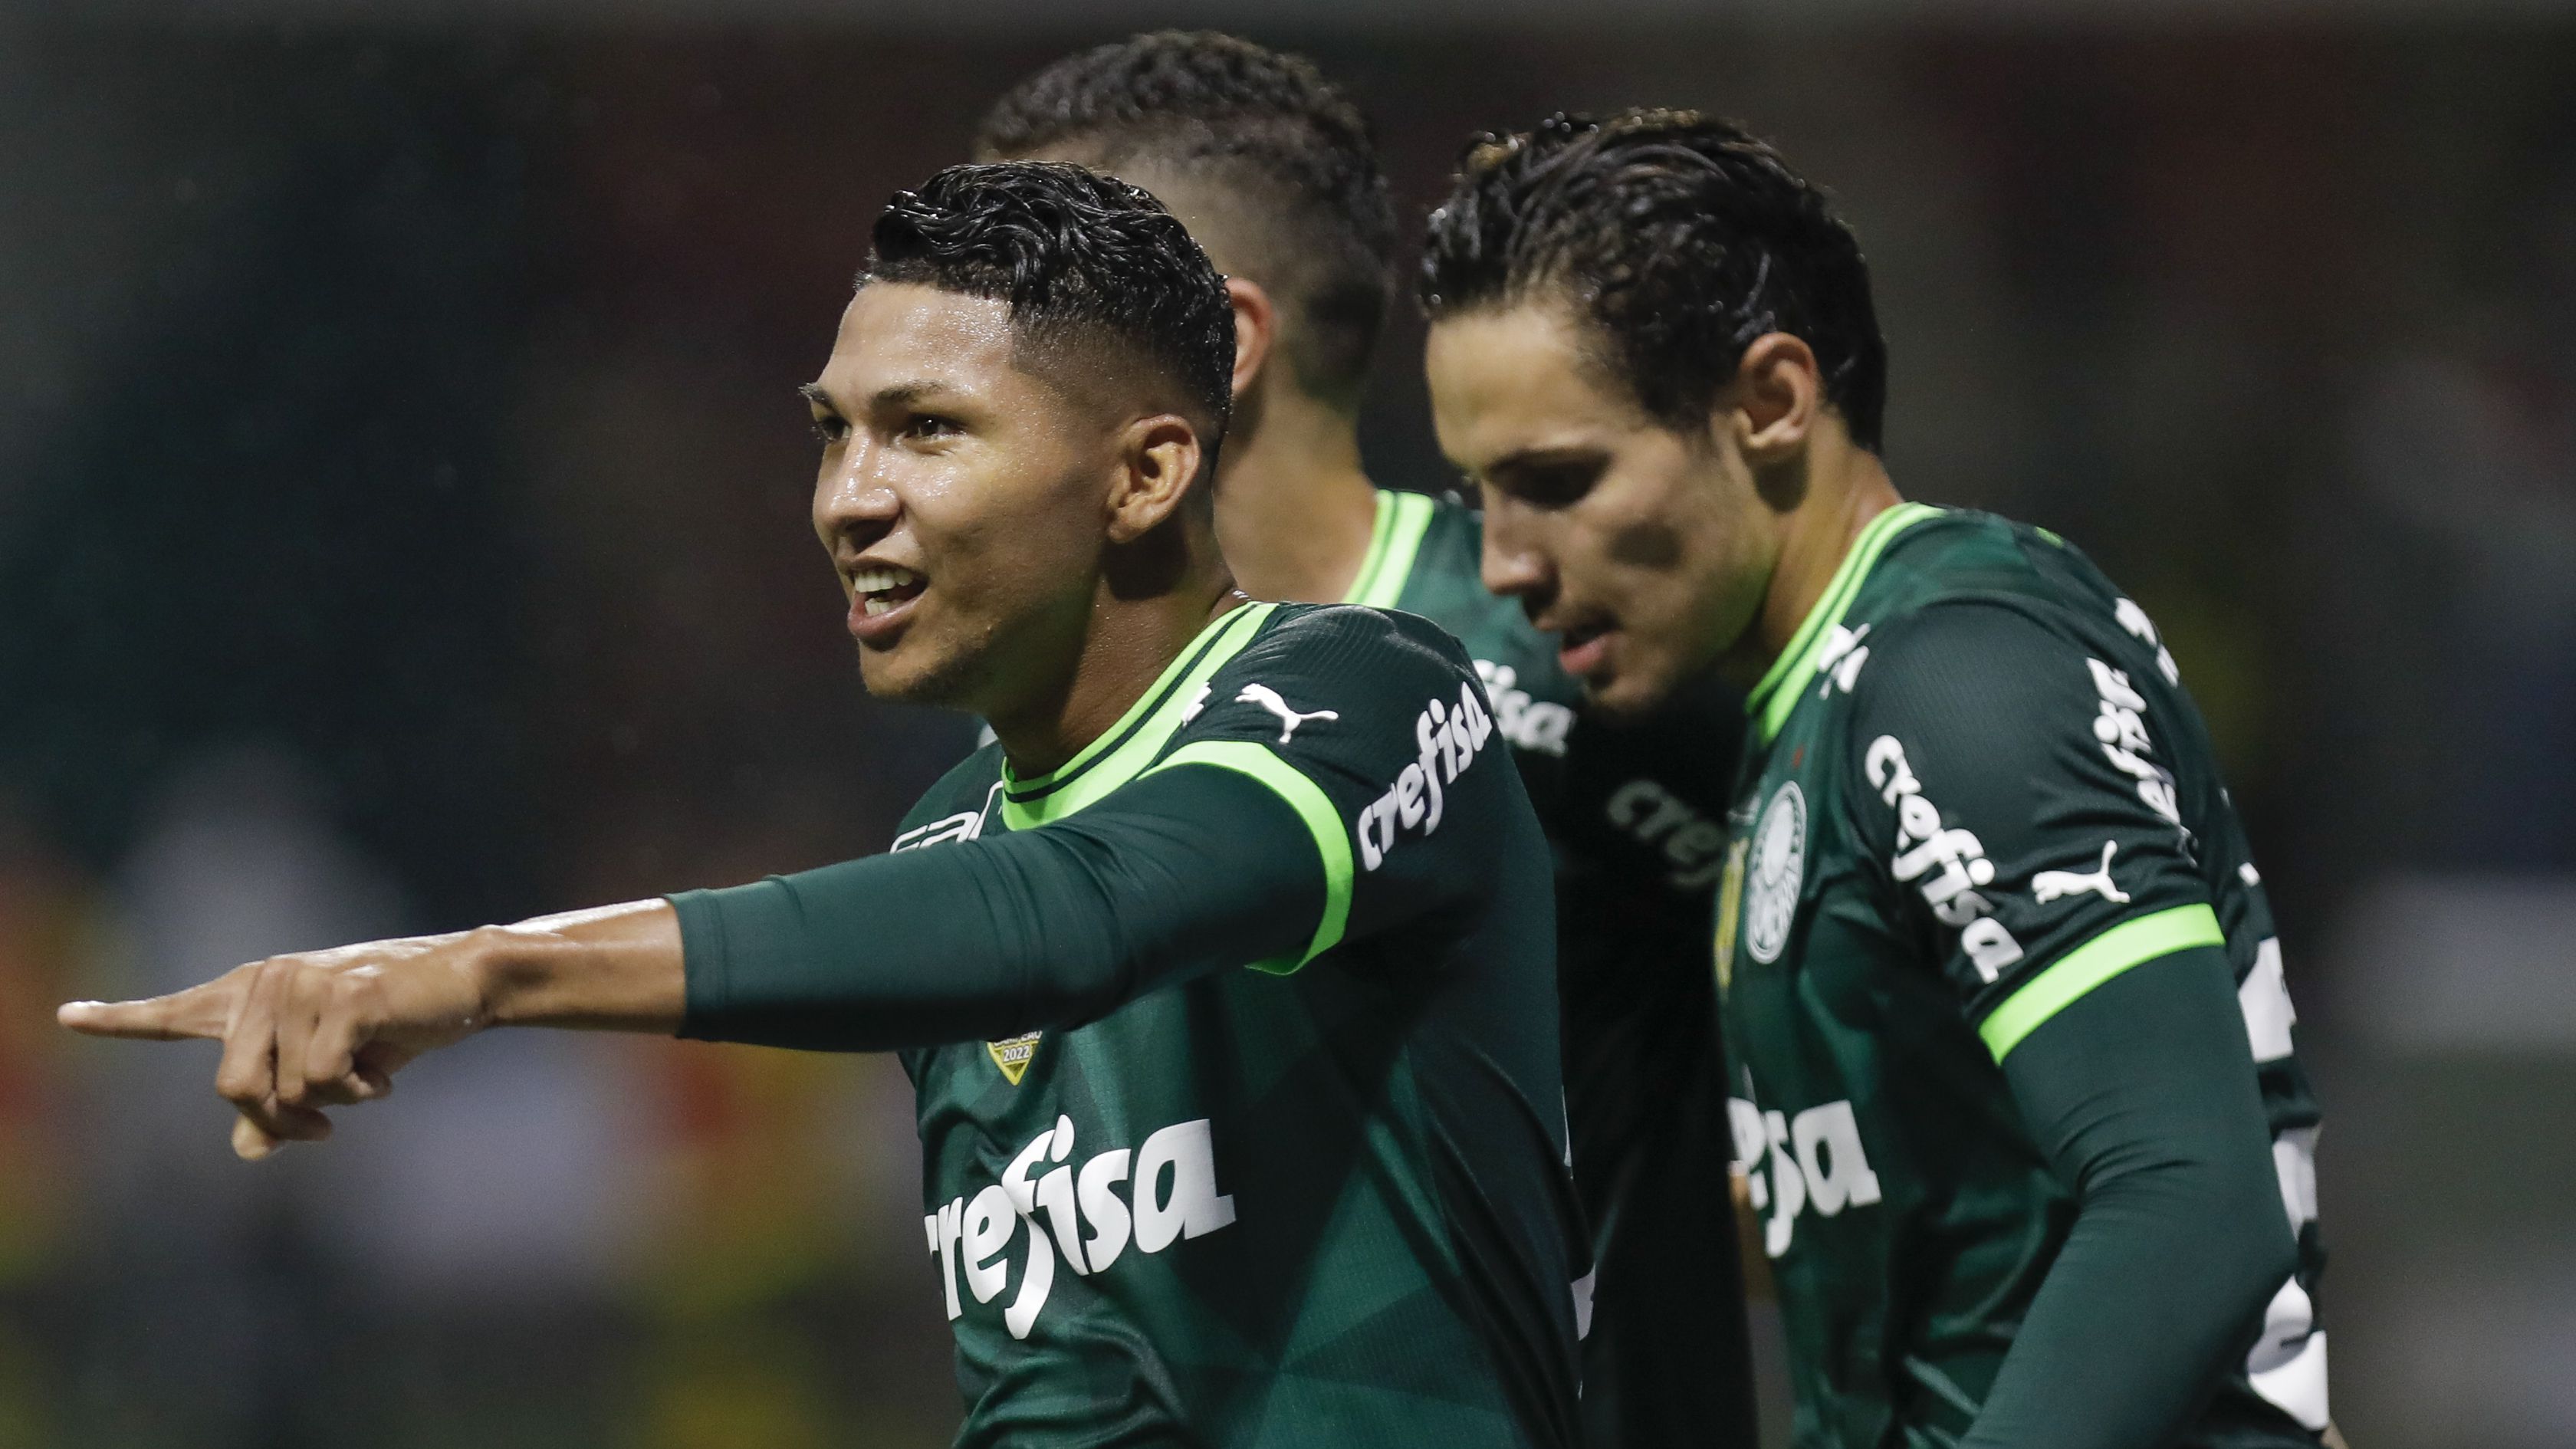 Palmeiras arranca empate com São Bernardo fora de casa no Paulistão